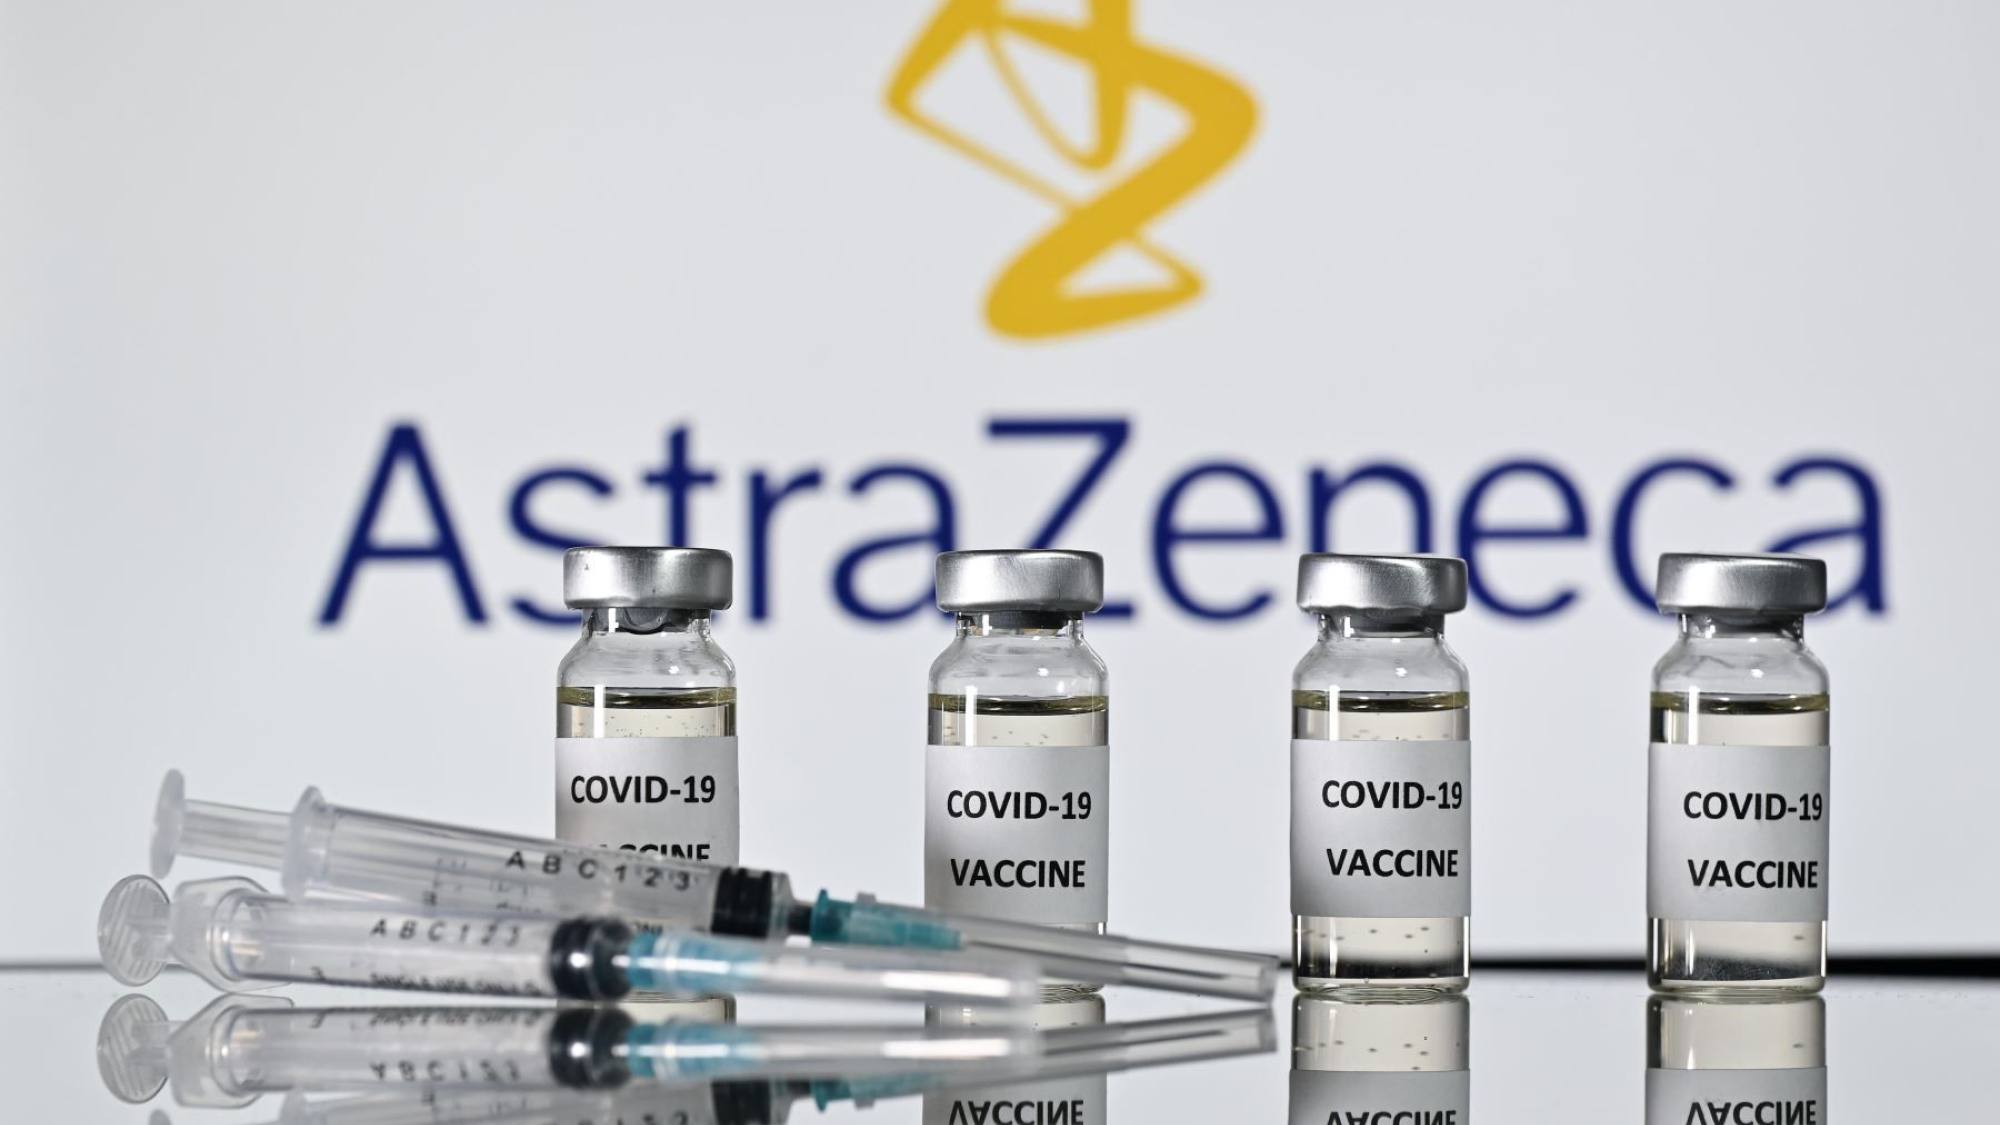 3 millones de vacunas Astrazeneca vencen en menos de 2 meses, Epicentro TV